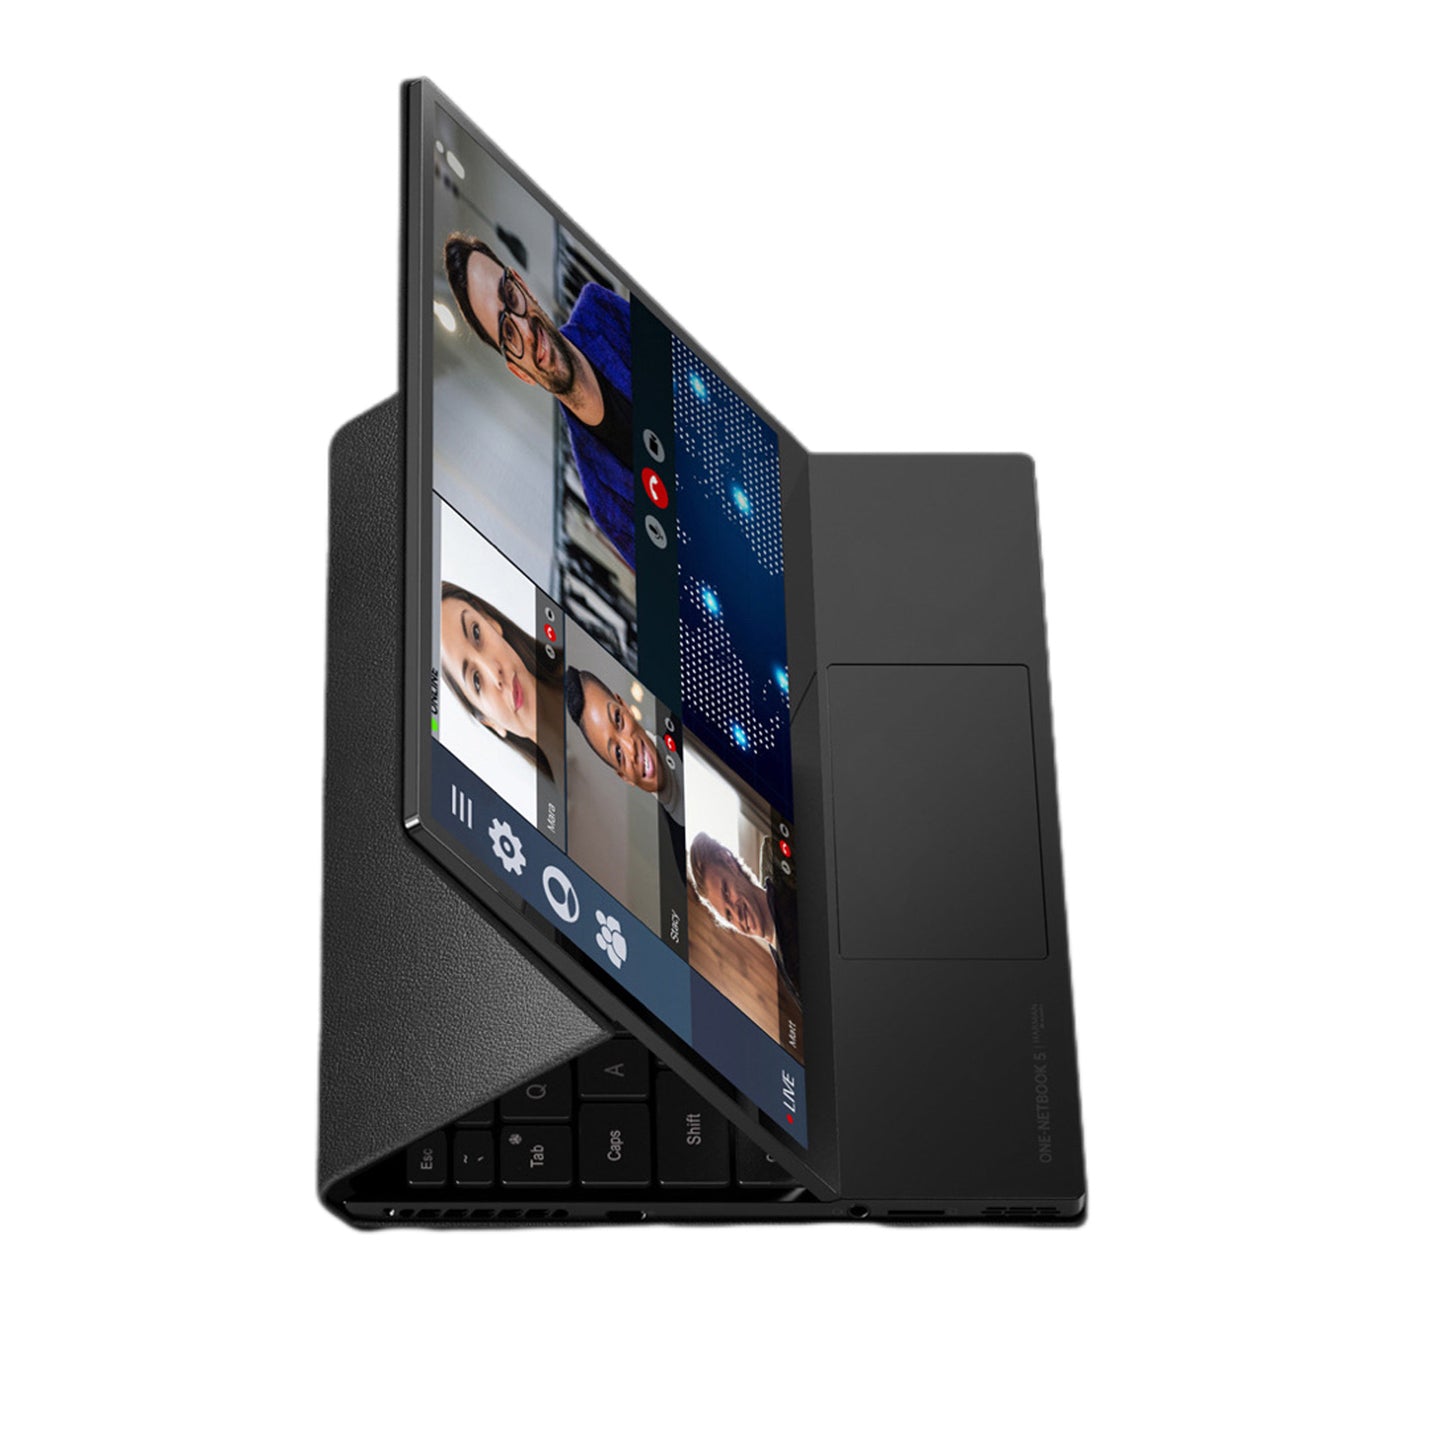 Noteboook T5 |32GB Ram | pantalla 10.1'' | Intel Core i7 1250U | GRAPHICS MAX DYNAMIC